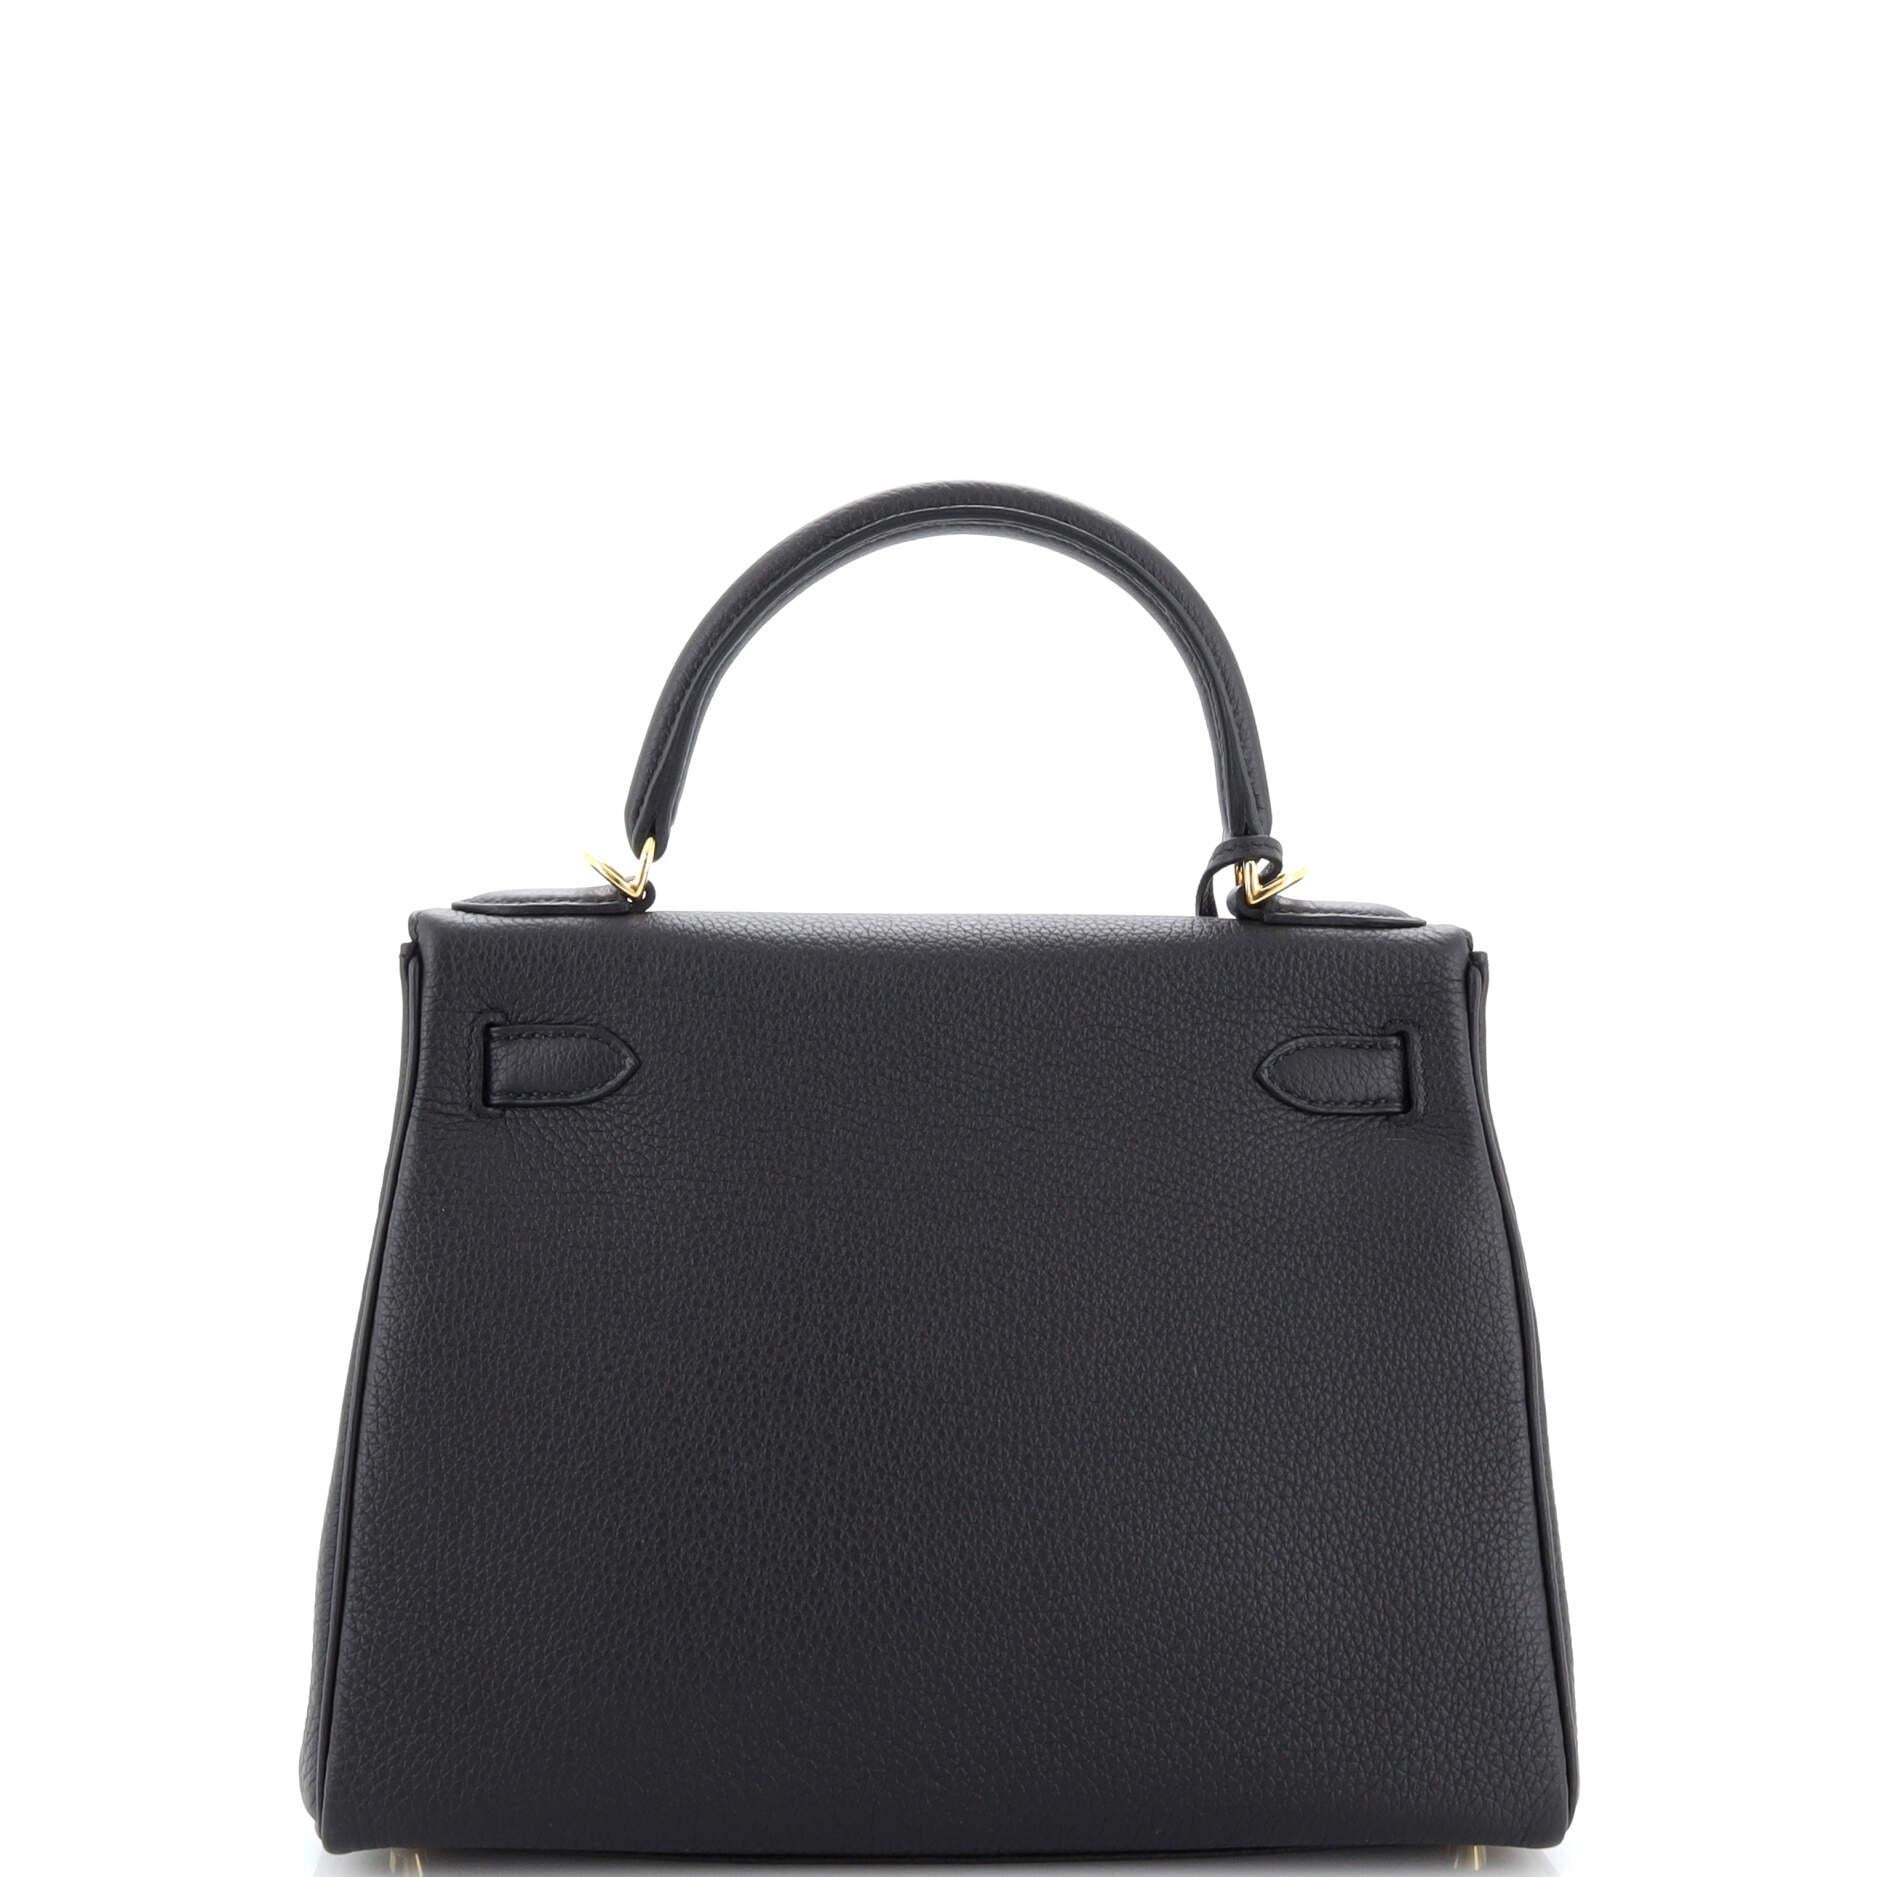 Women's or Men's Hermes Kelly Handbag Noir Togo with Gold Hardware 28